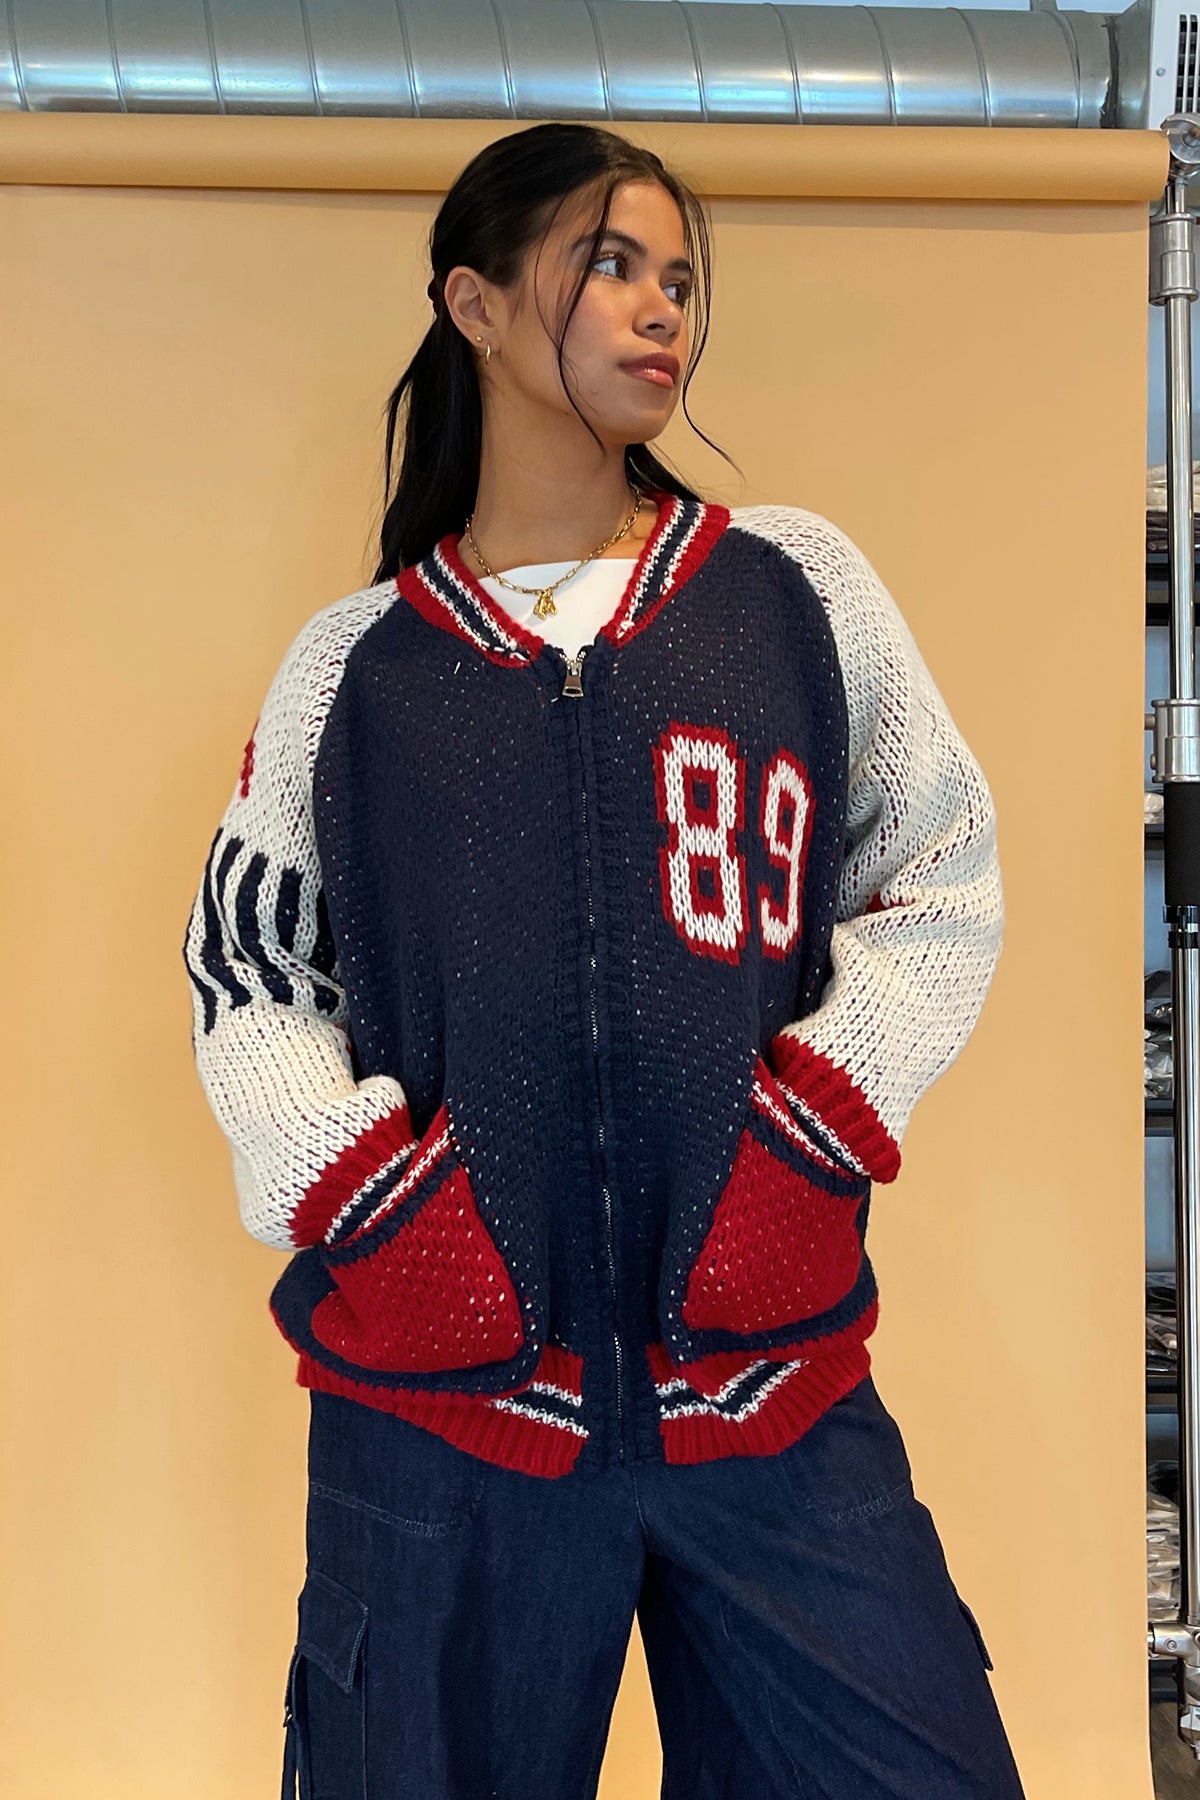 89 Up Rebelflow Navy Sweater – Zip Knit Number